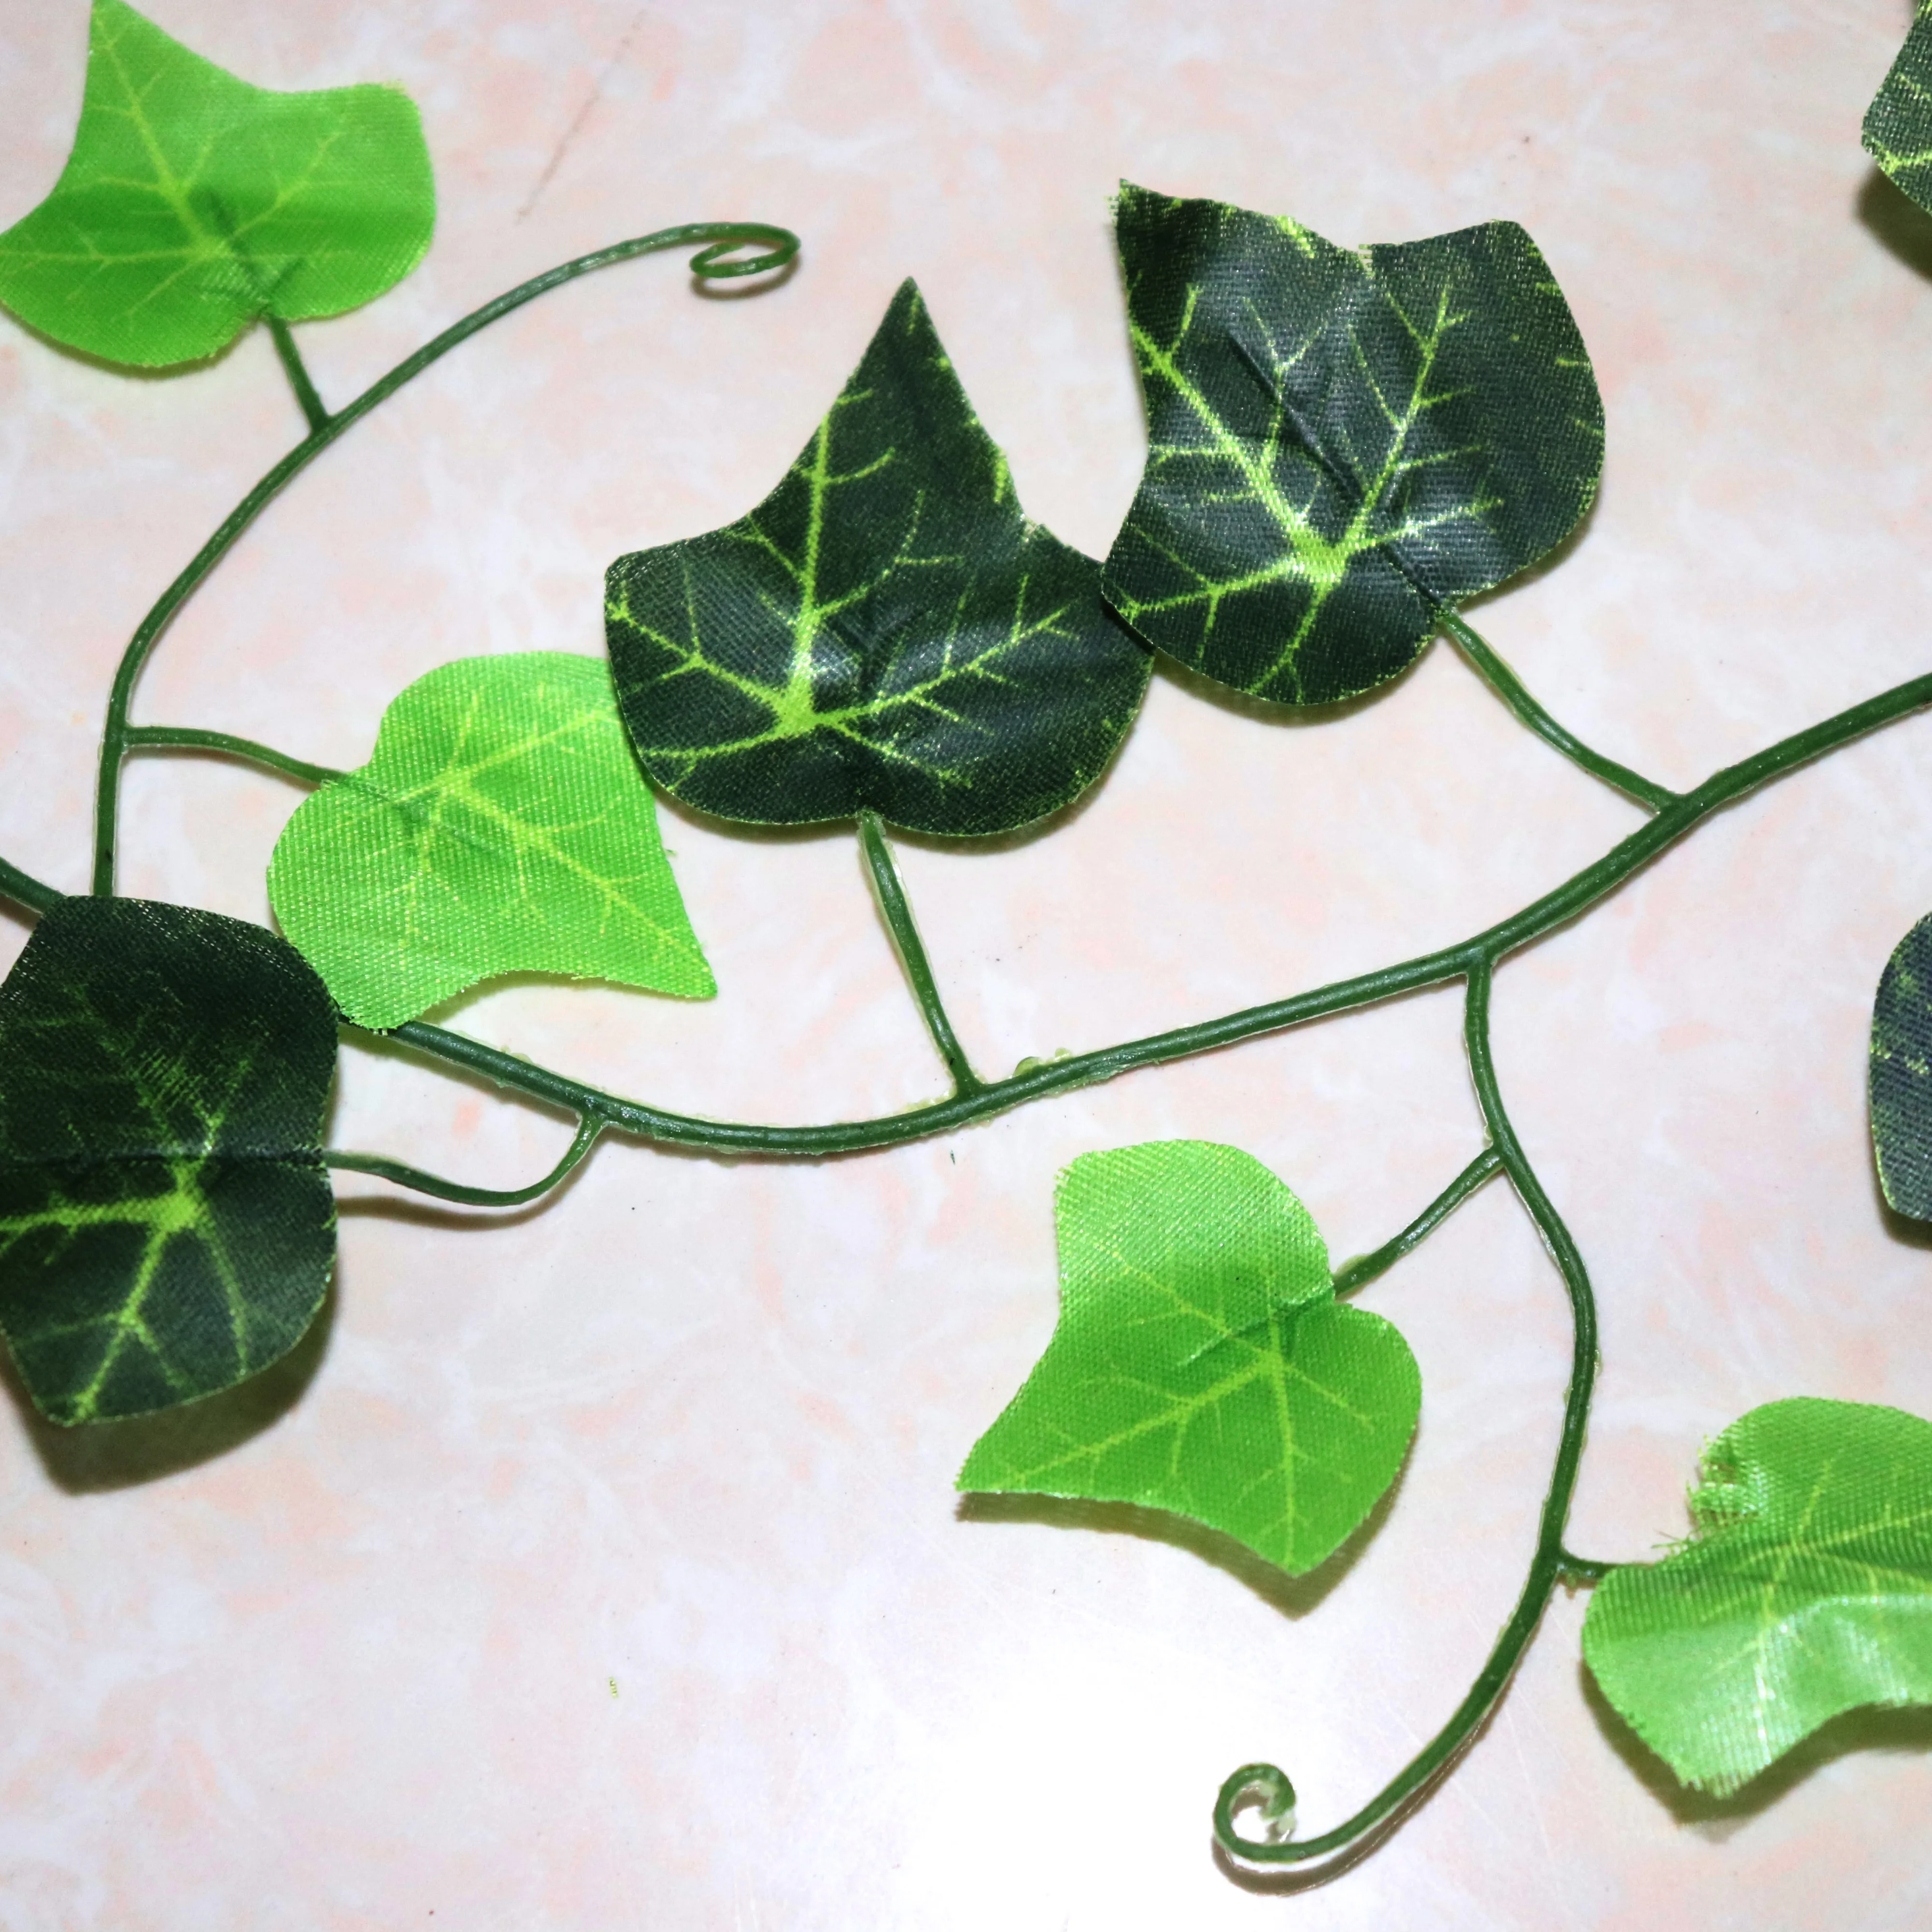 Tanie 100 sztuk liść 1 sztuka 2.4M Home Decor sztuczny liść bluszczu girlanda roślinna sztuczne sklep